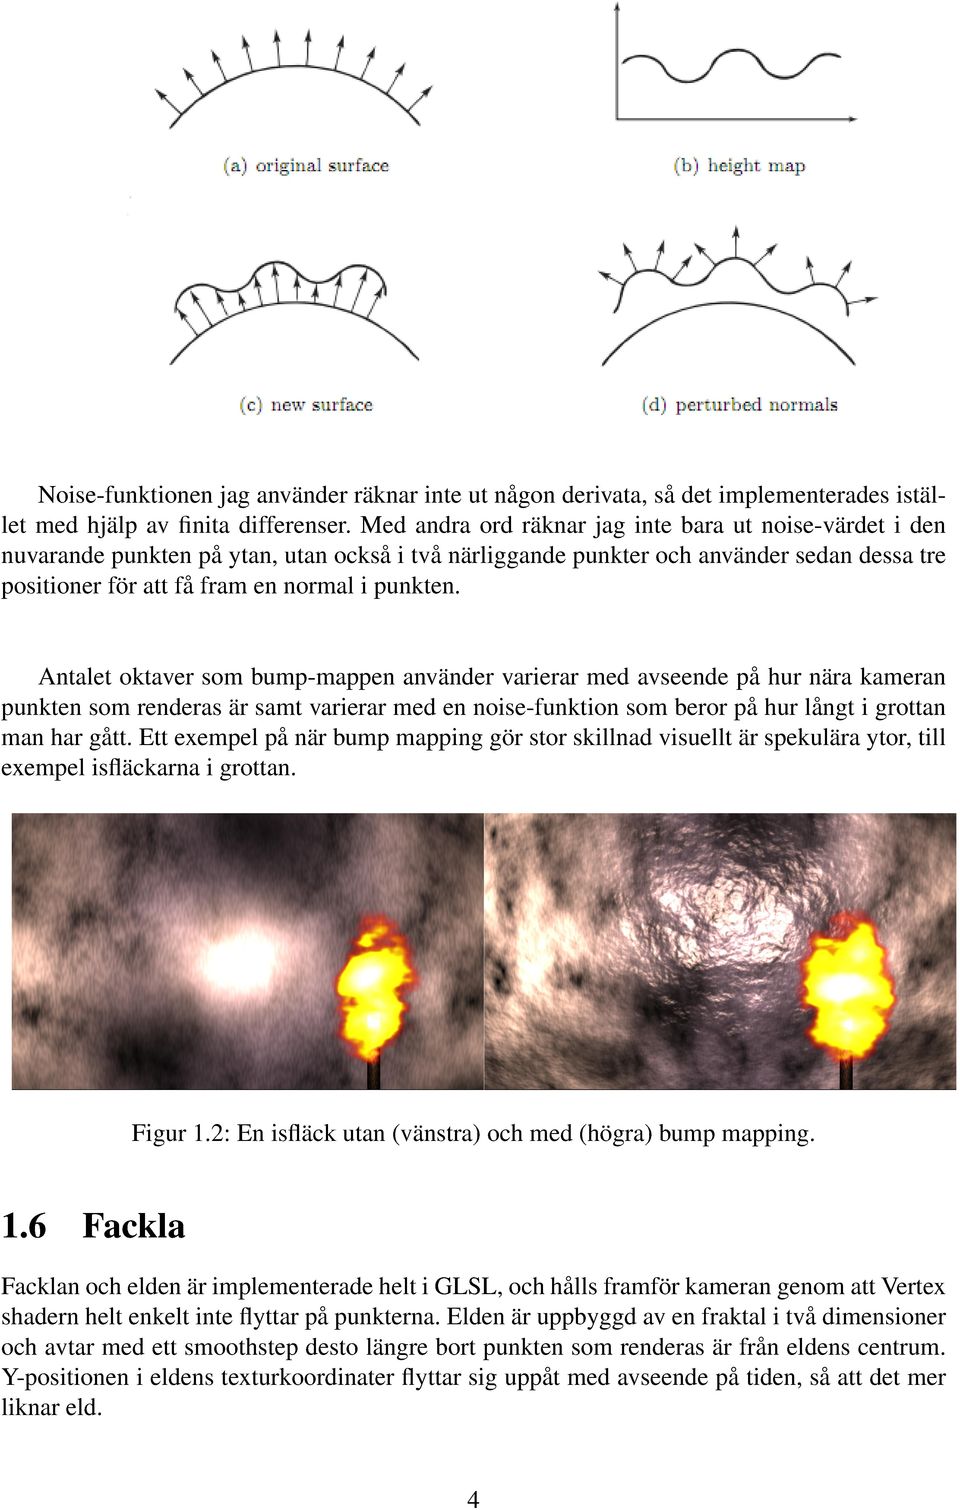 Antalet oktaver som bump-mappen använder varierar med avseende på hur nära kameran punkten som renderas är samt varierar med en noise-funktion som beror på hur långt i grottan man har gått.